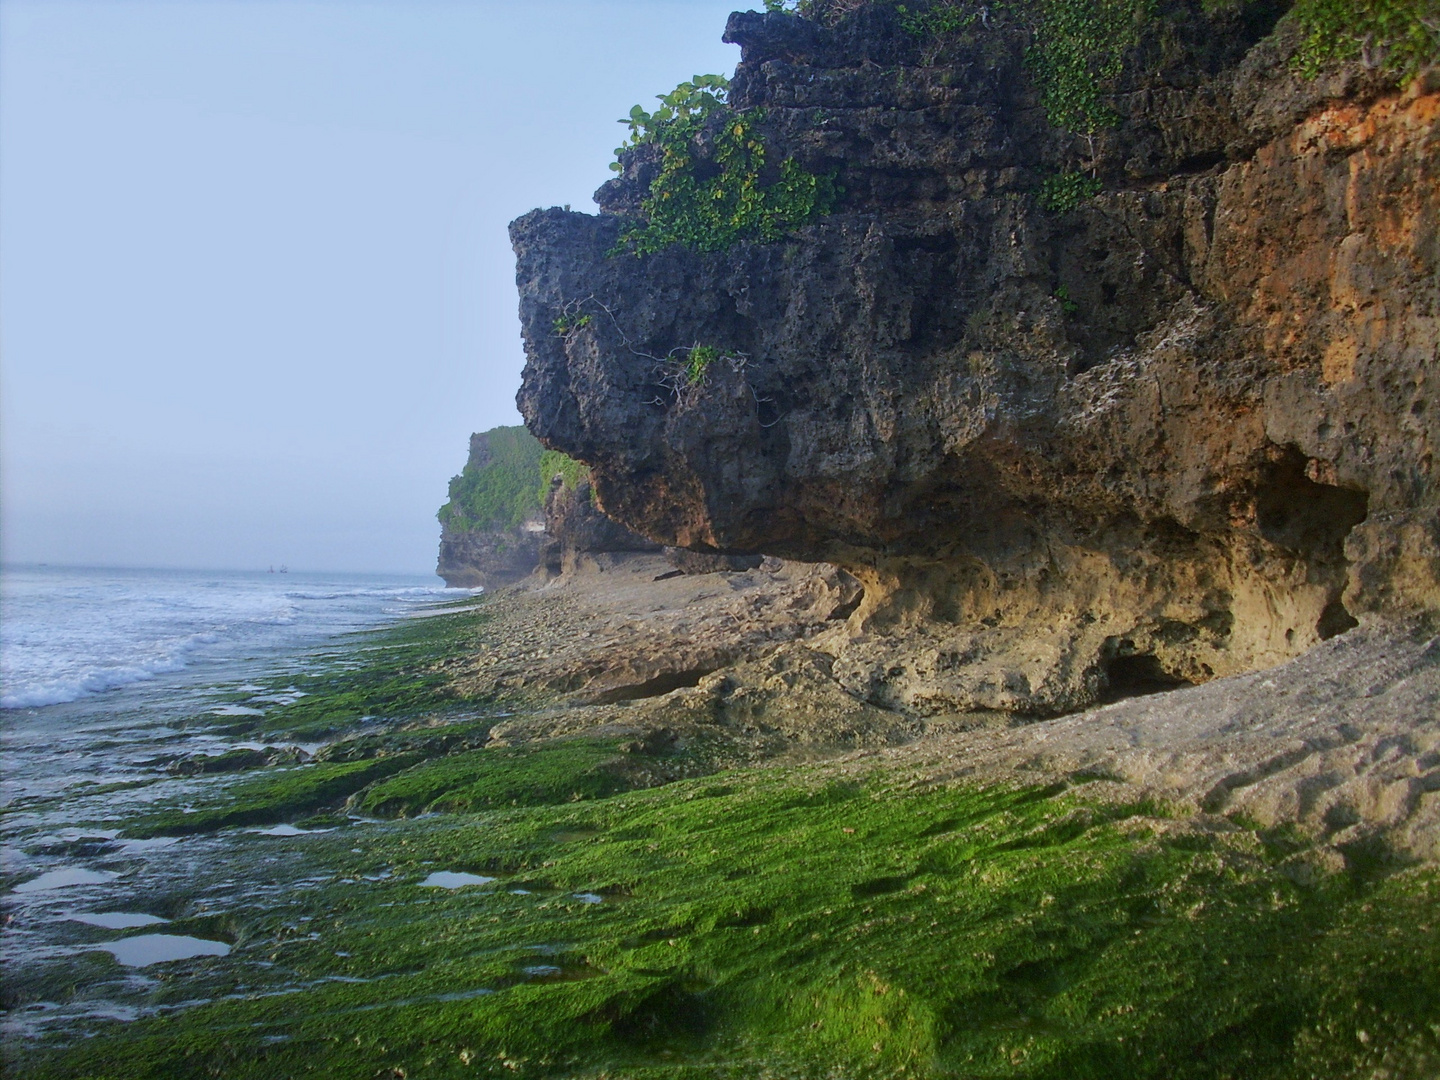 Balis Steilkuesten sind ein Traum!